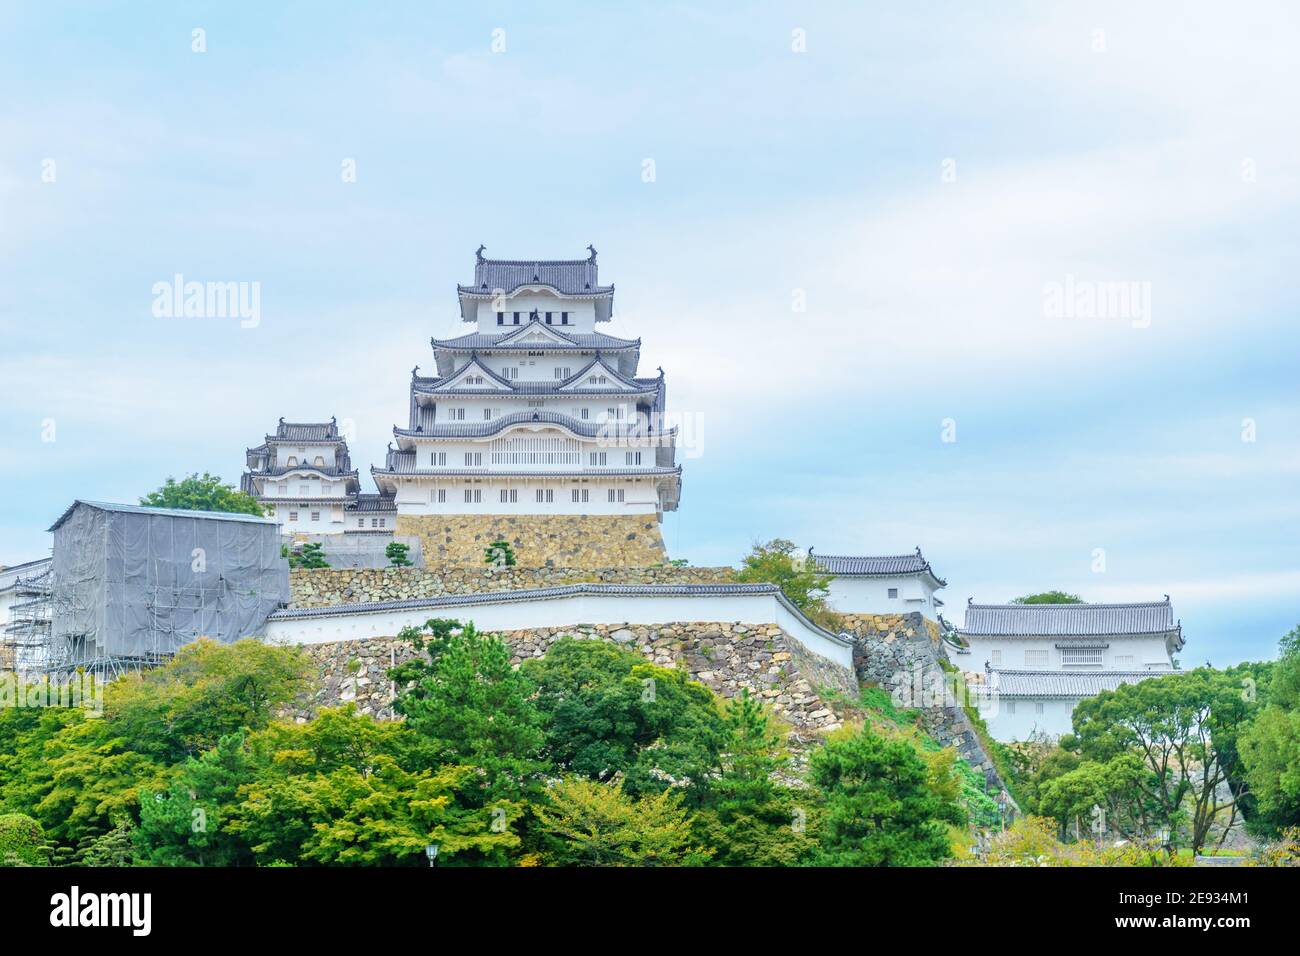 Vue sur le château de Himeji, daté 1333, dans la ville de Himeji, préfecture de Hyogo, Japon Banque D'Images